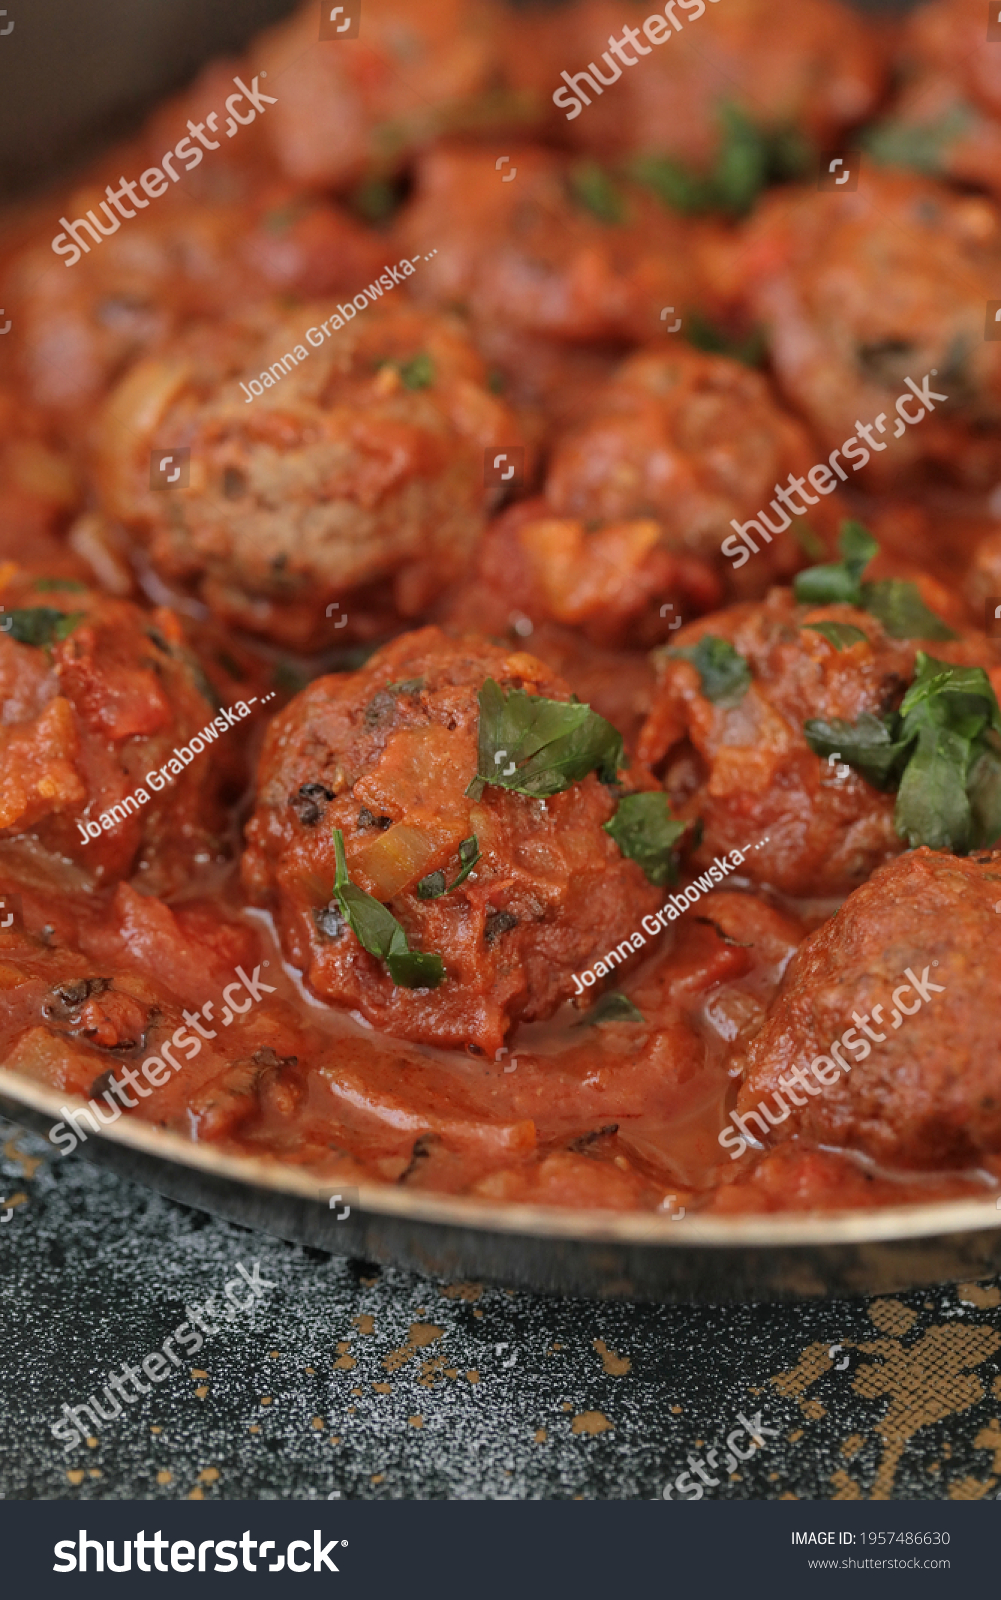 Lebanese Beef Meatballs Tomato Sauce Daoud Stock Photo 1957486630 ...